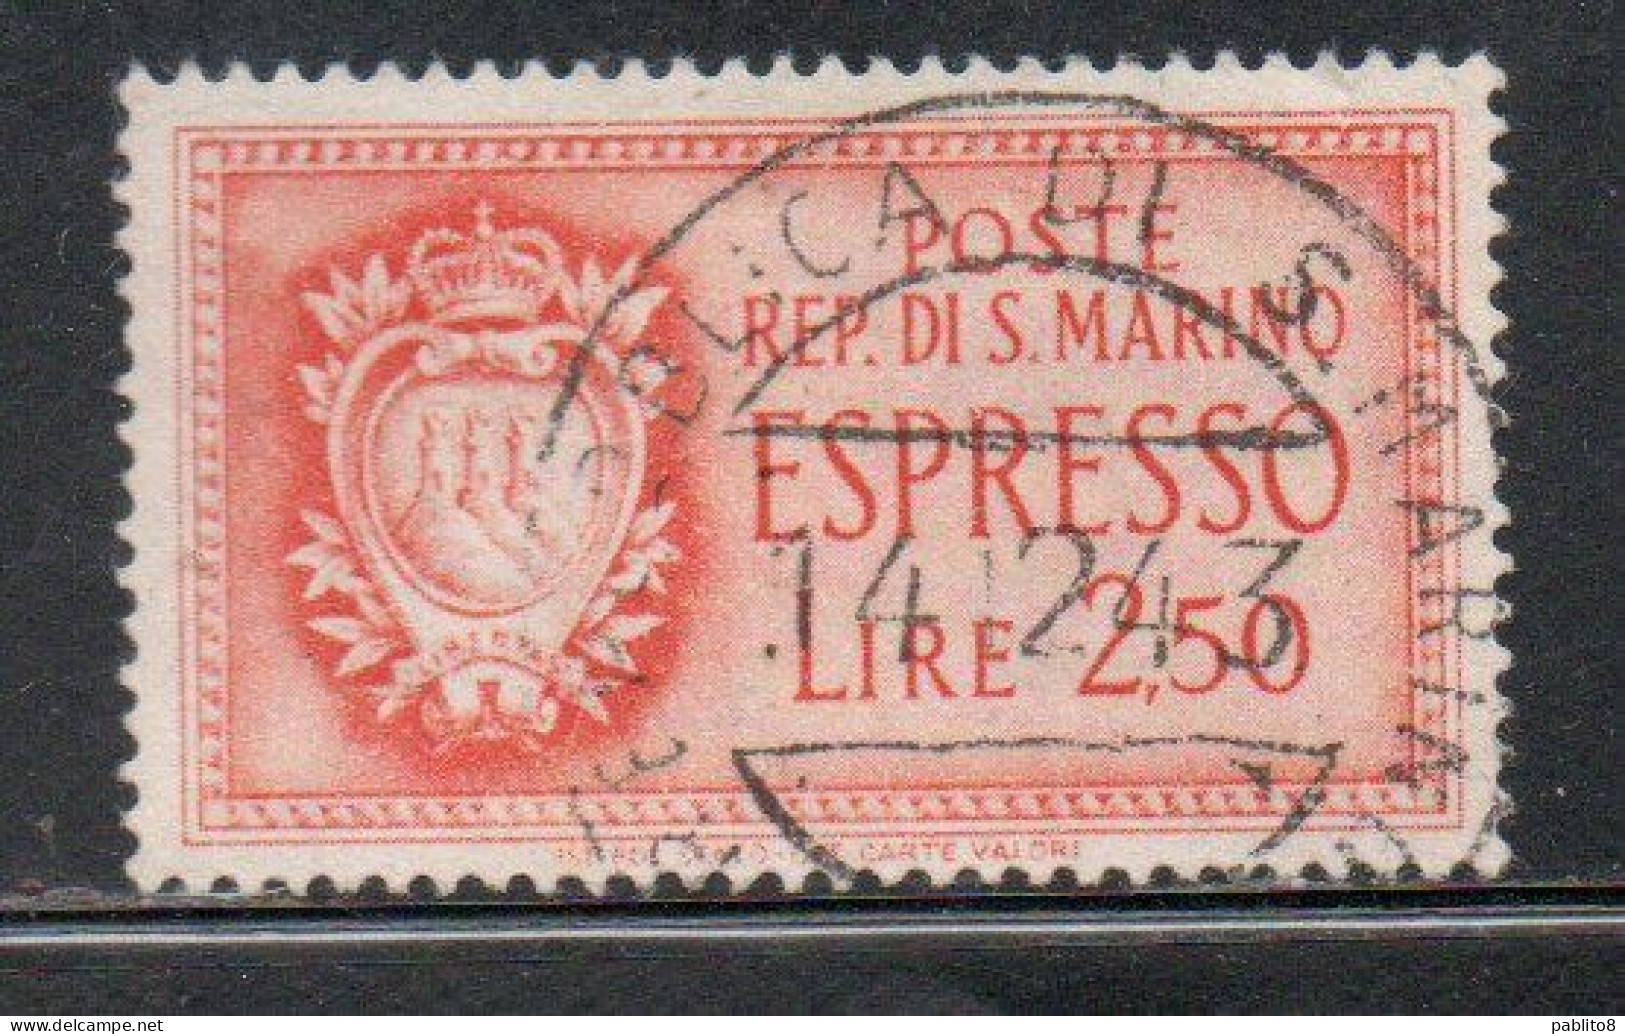 REPUBBLICA DI SAN MARINO 1943 ESPRESSI STEMMA SPECIAL DELIVERY COAT OF ARMS ESPRESSO LIRE 2,50  USATA USED OBLITERE' - Francobolli Per Espresso